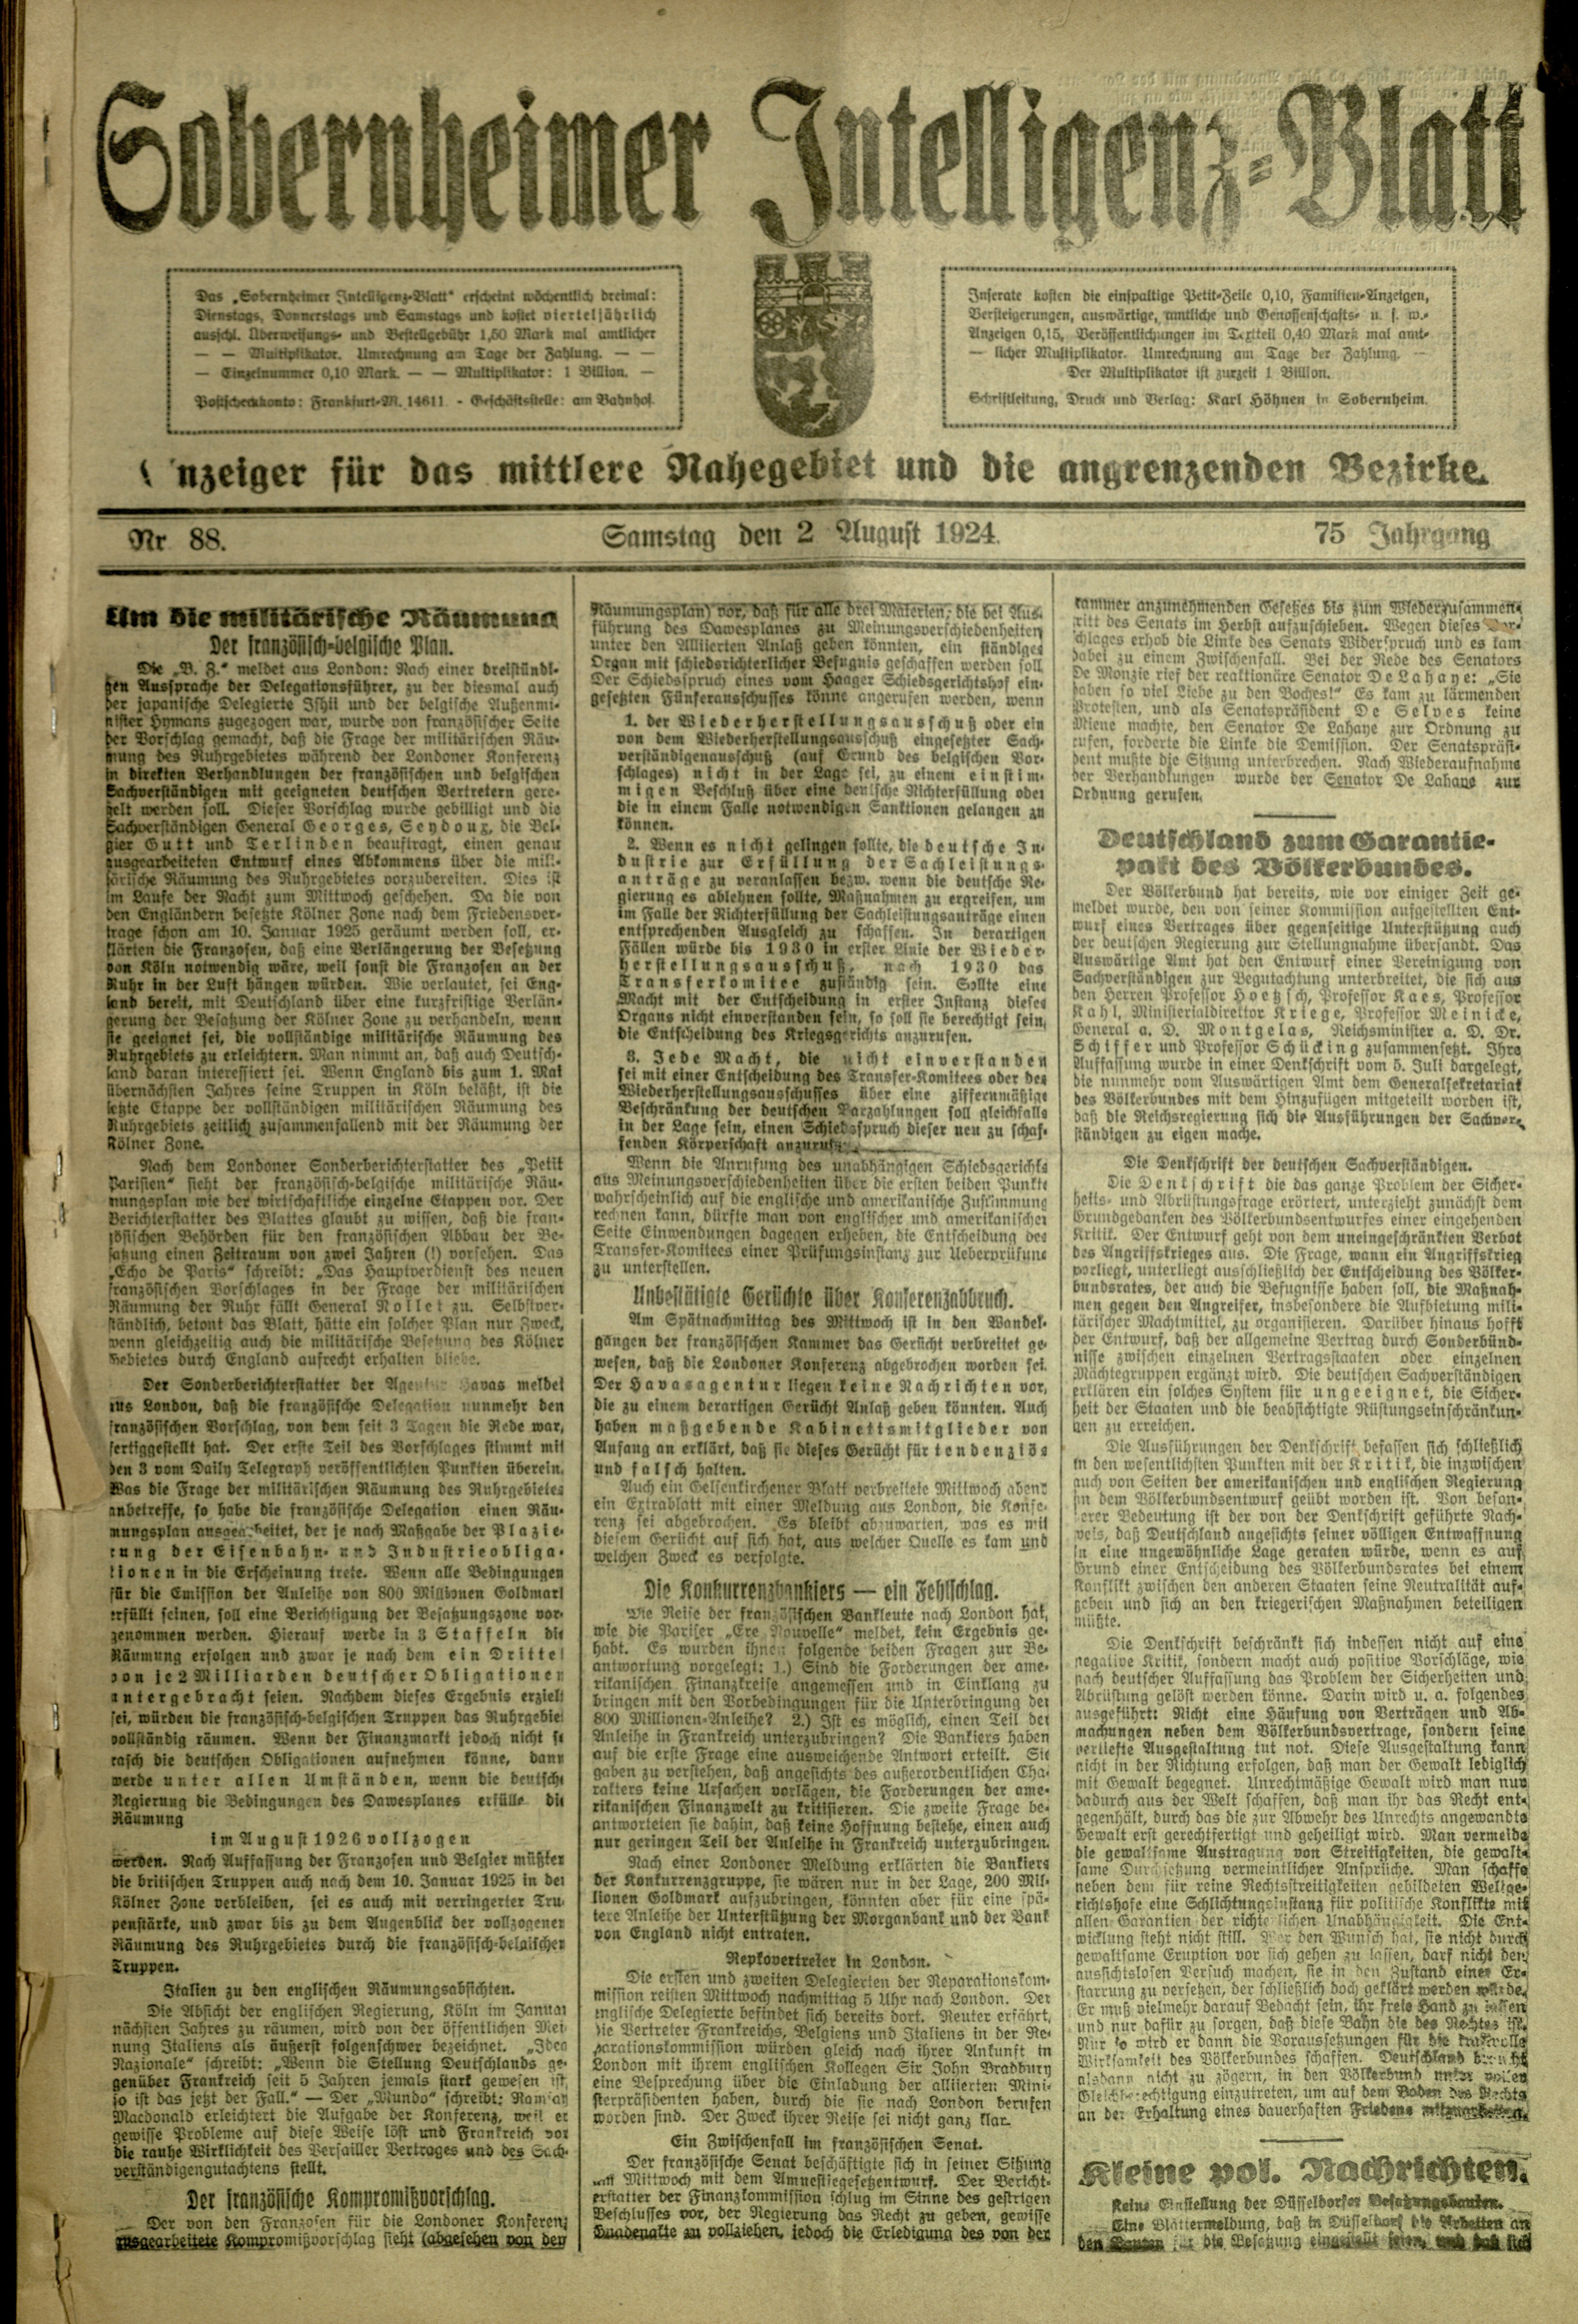 Zeitung: Sobernheimer Intelligenzblatt; August 1924, Jg. 73 Nr. 88 (Heimatmuseum Bad Sobernheim CC BY-NC-SA)